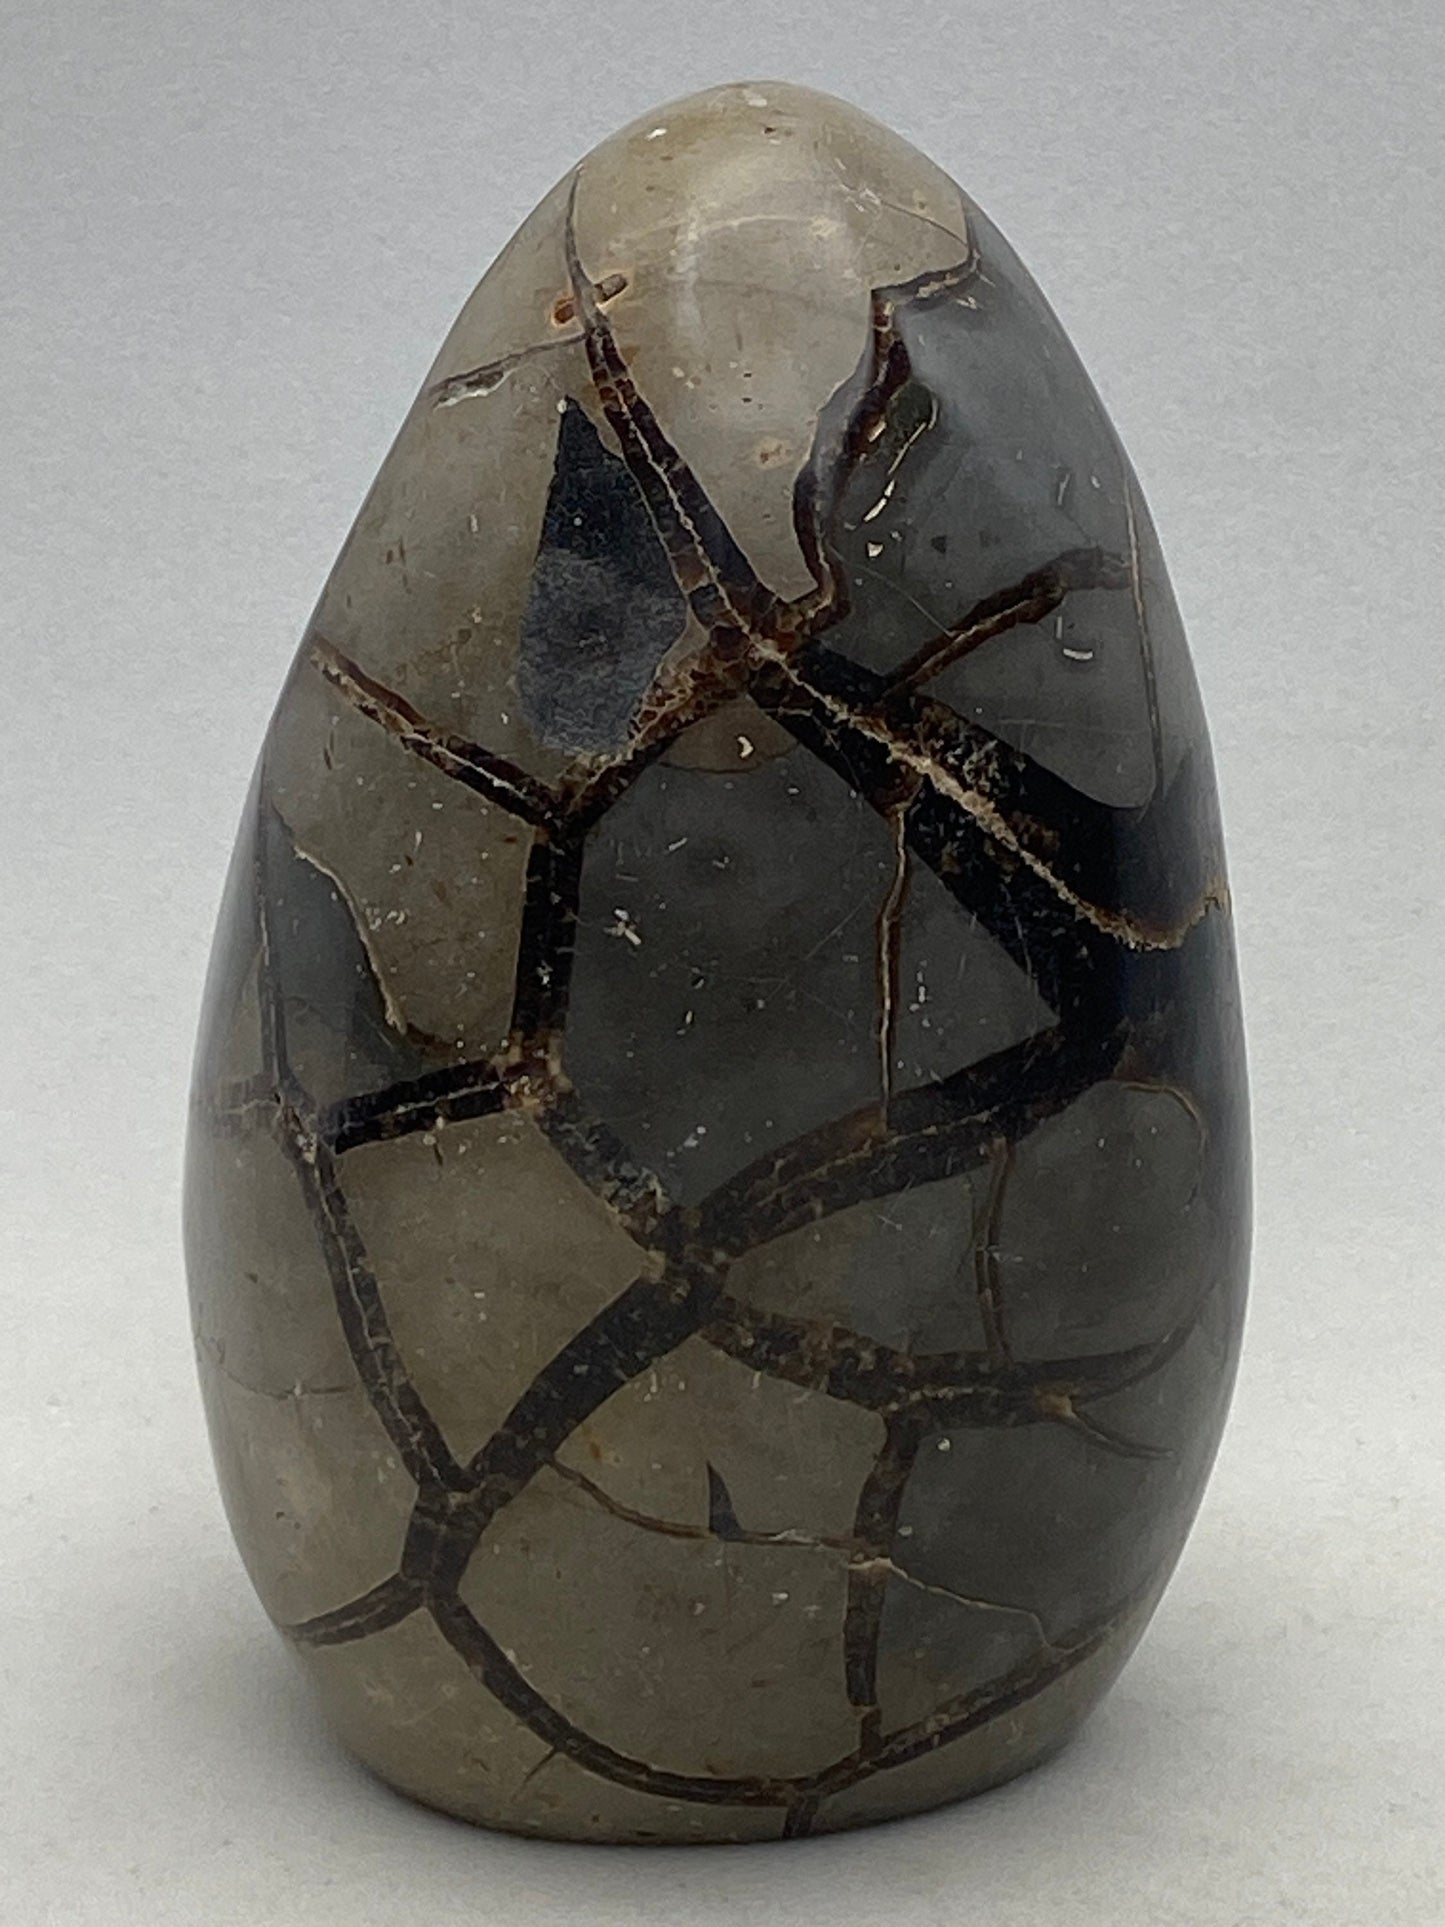 Dragons Egg Septarian Nodule - RocciaRoba